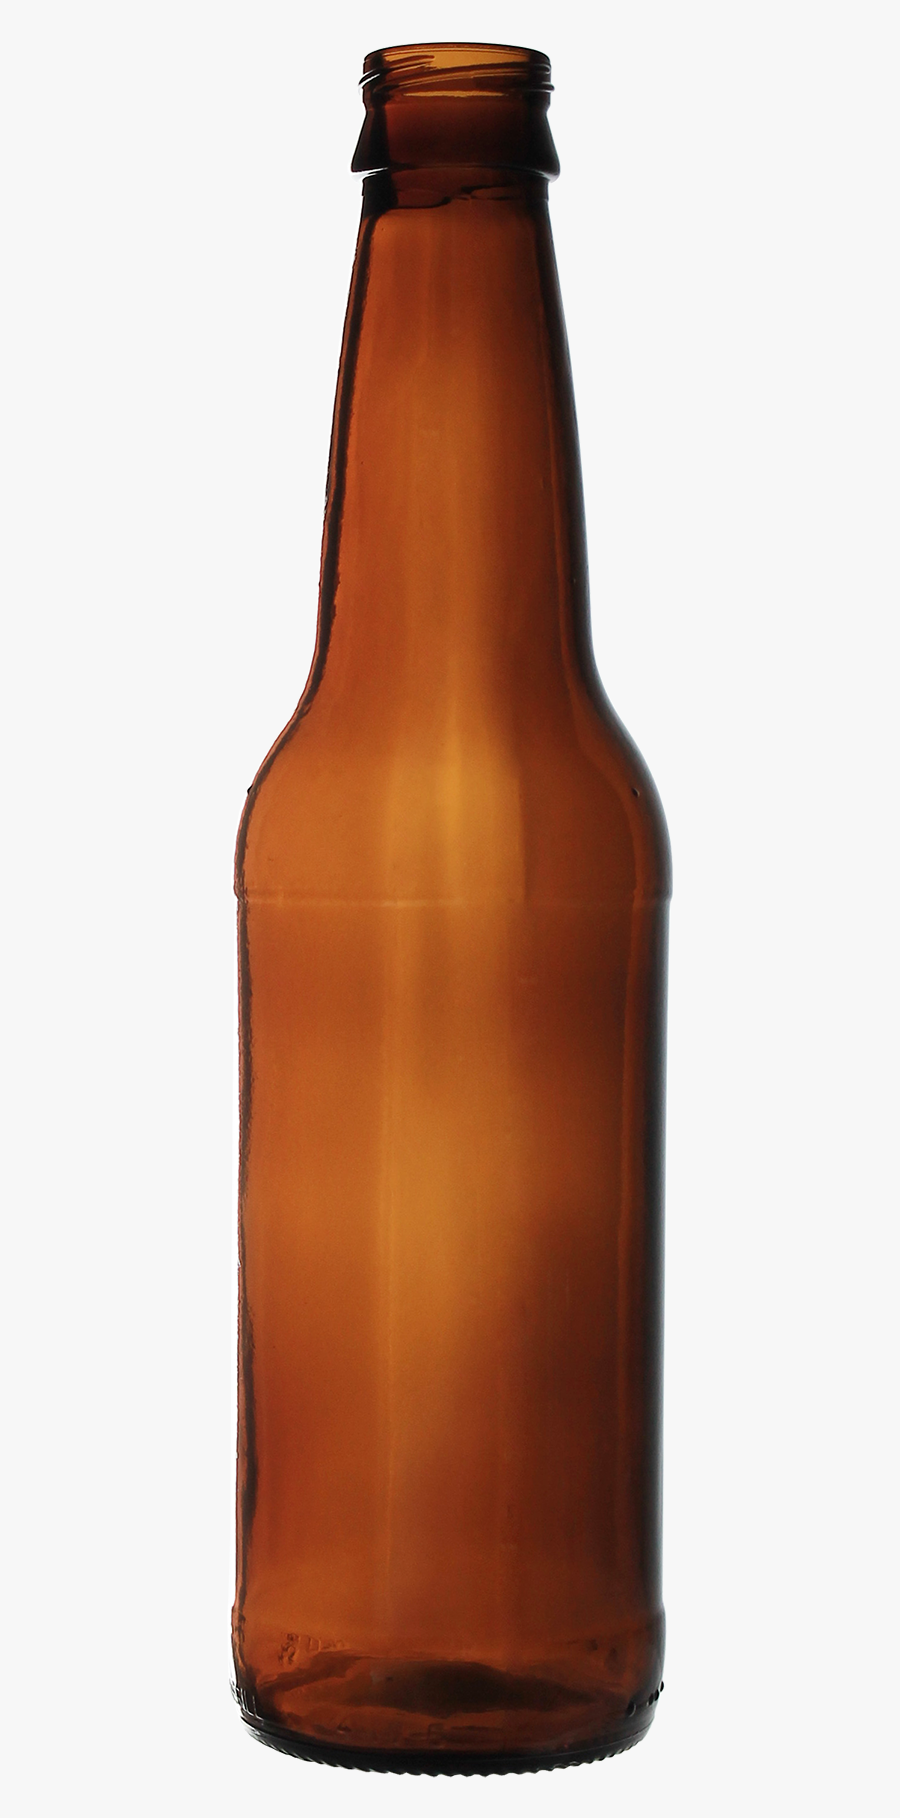 Beer Bottle - Open Beer Bottle Png, Transparent Clipart